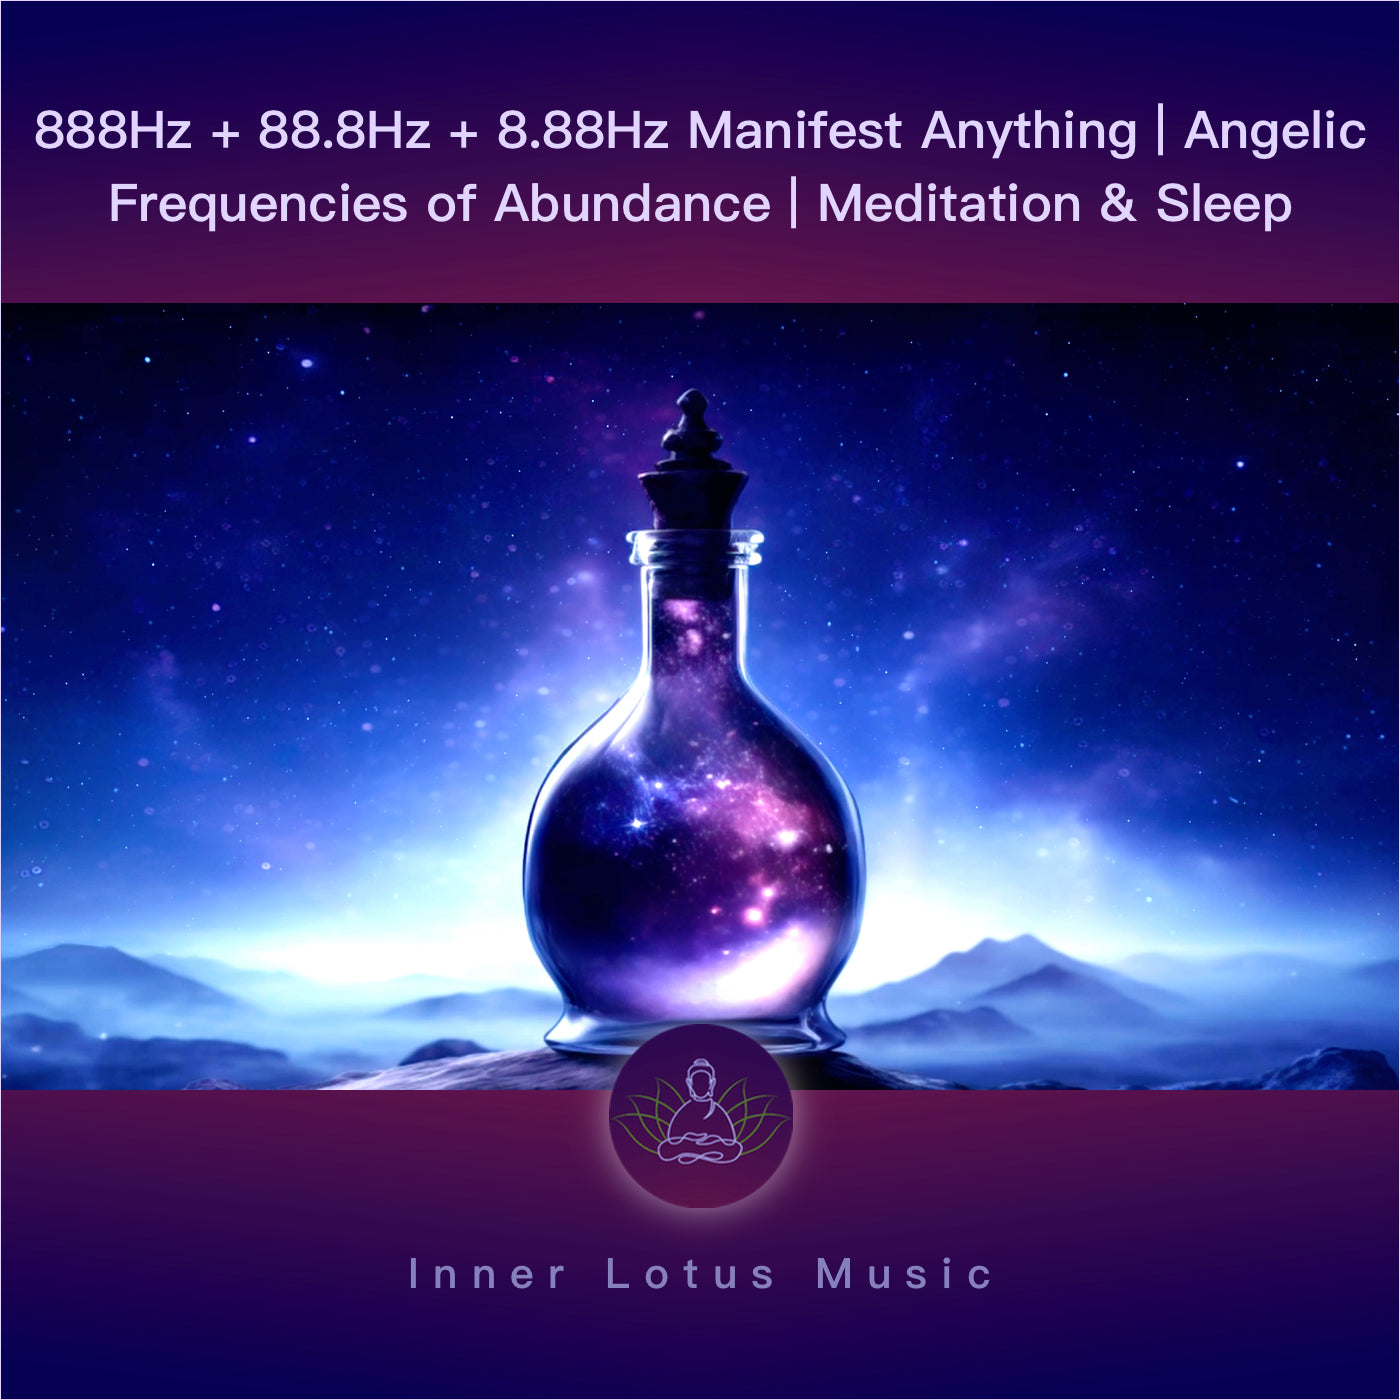 888Hz + 88,8Hz + 8,88Hz Manifiesta Todo | Frecuencias Angelicas de Prosperidad | Música Meditación